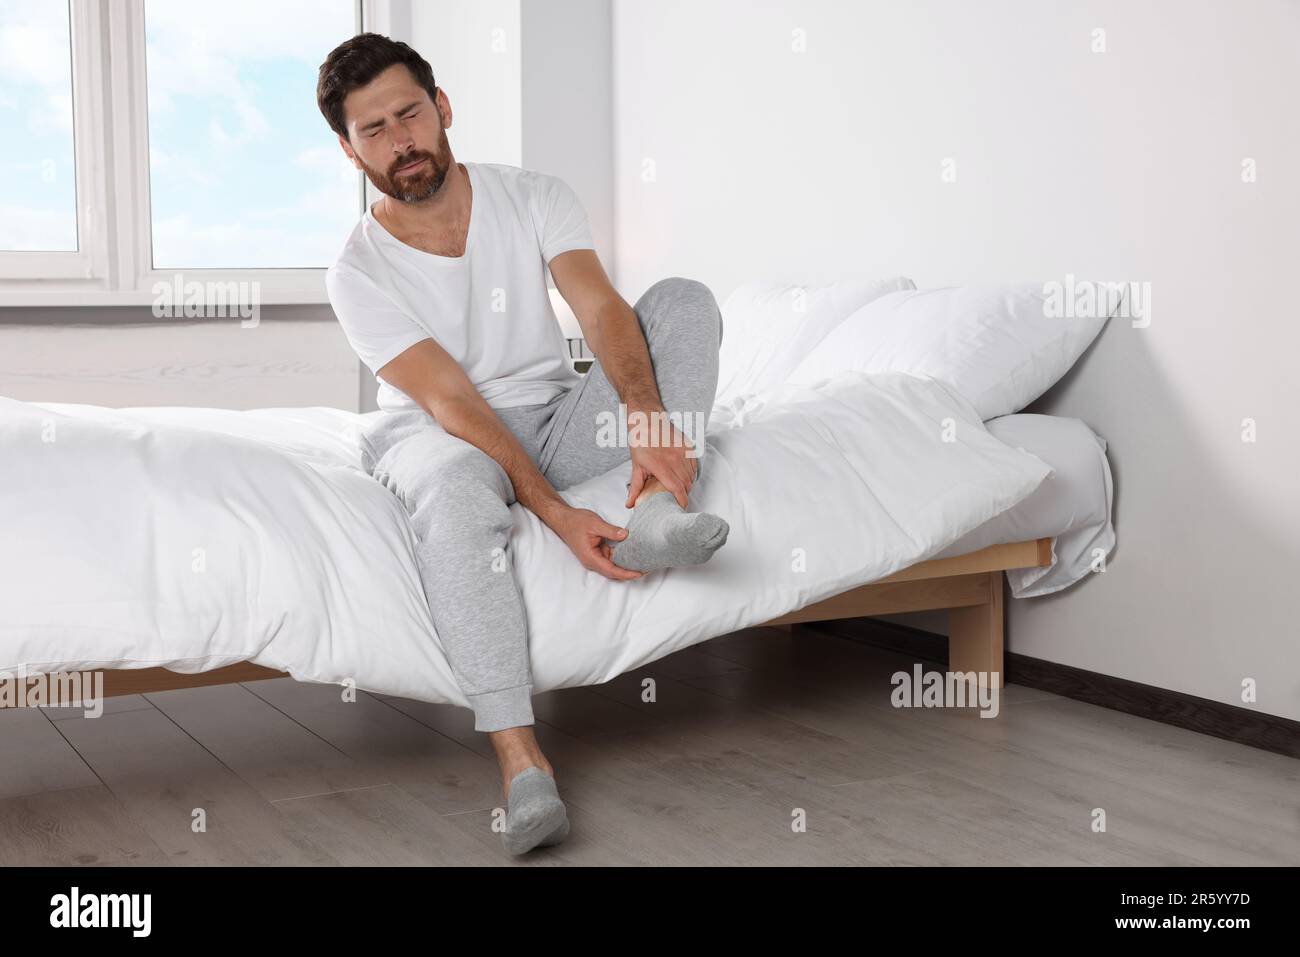 Mann mit Beinschmerzen zu Hause im Bett Stockfotografie - Alamy